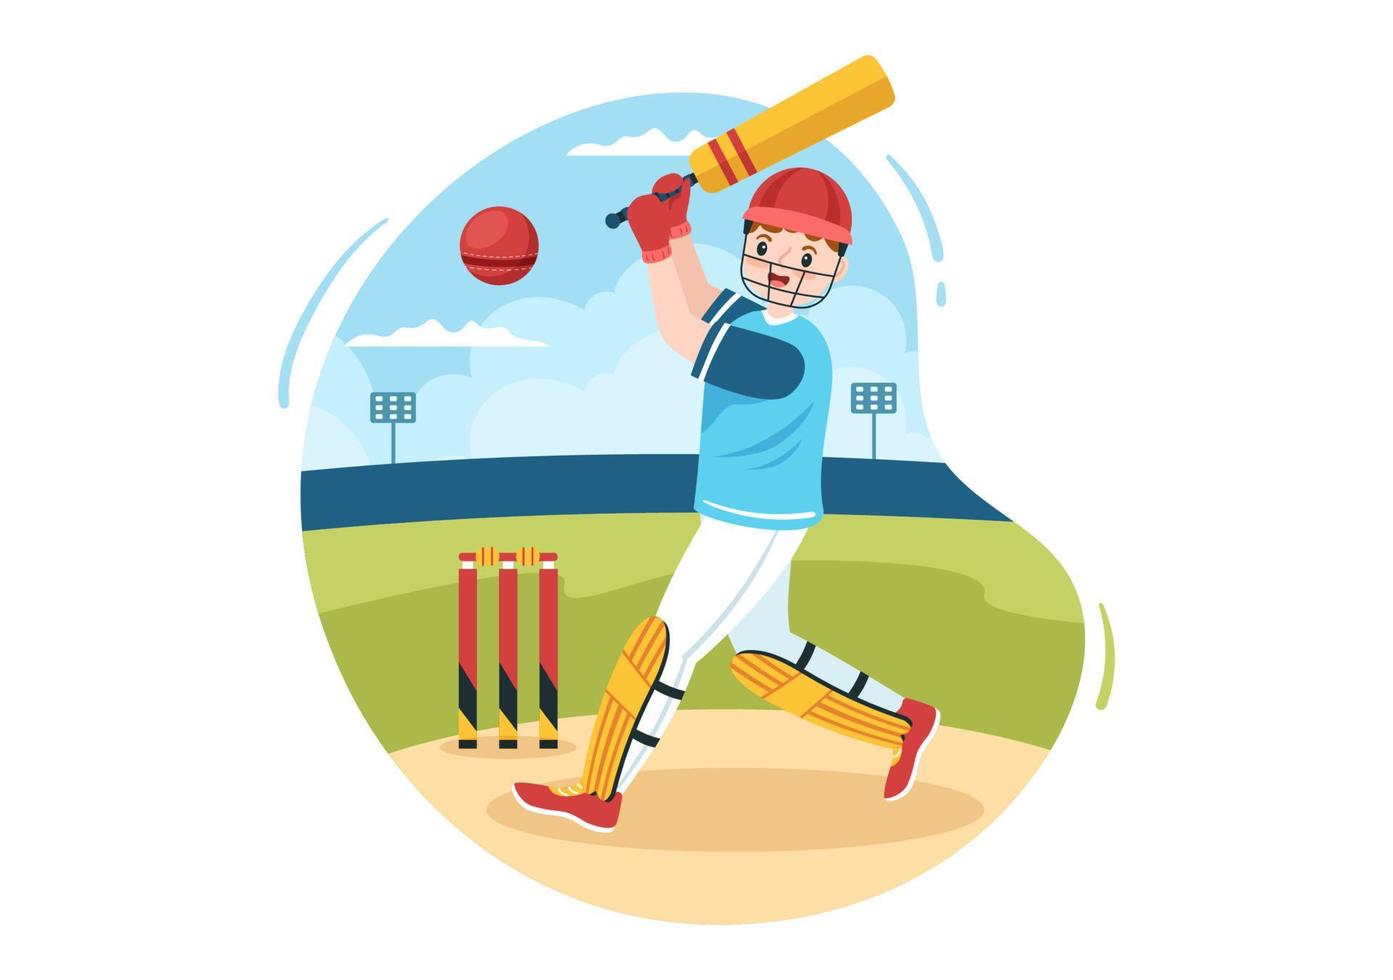 batedor jogando esportes de críquete com bola e taco em ilustração de fundo de campo de desenho animado plano vetor